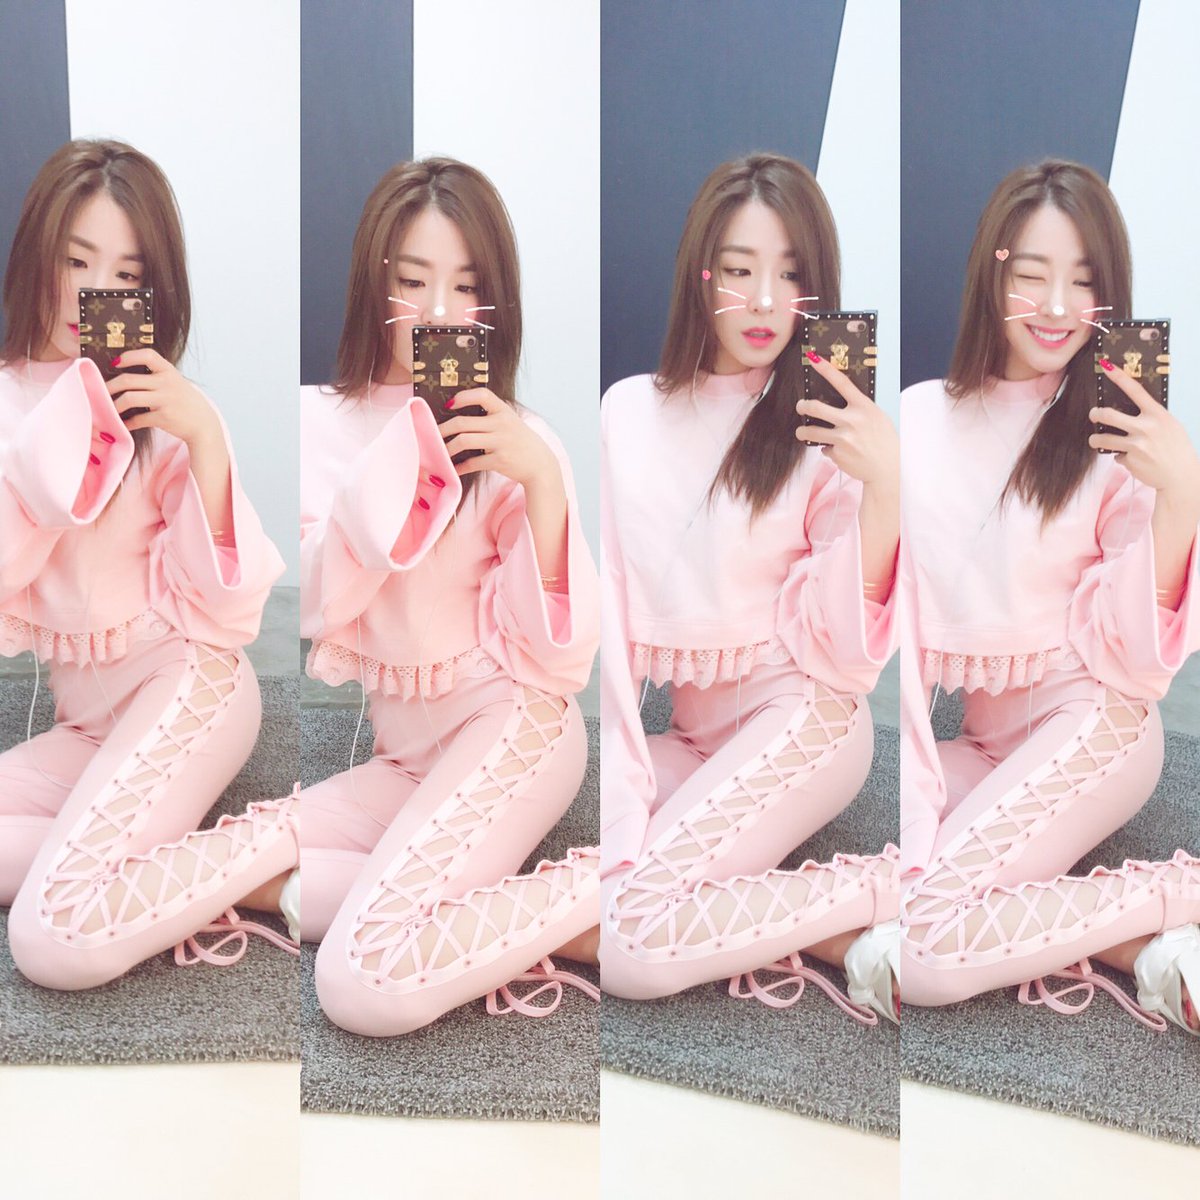 [OTHER][17-09-2014]Tiffany gia nhập mạng xã hội Instagram + Selca mới của cô - Page 14 DAAevxuUMAAw7od